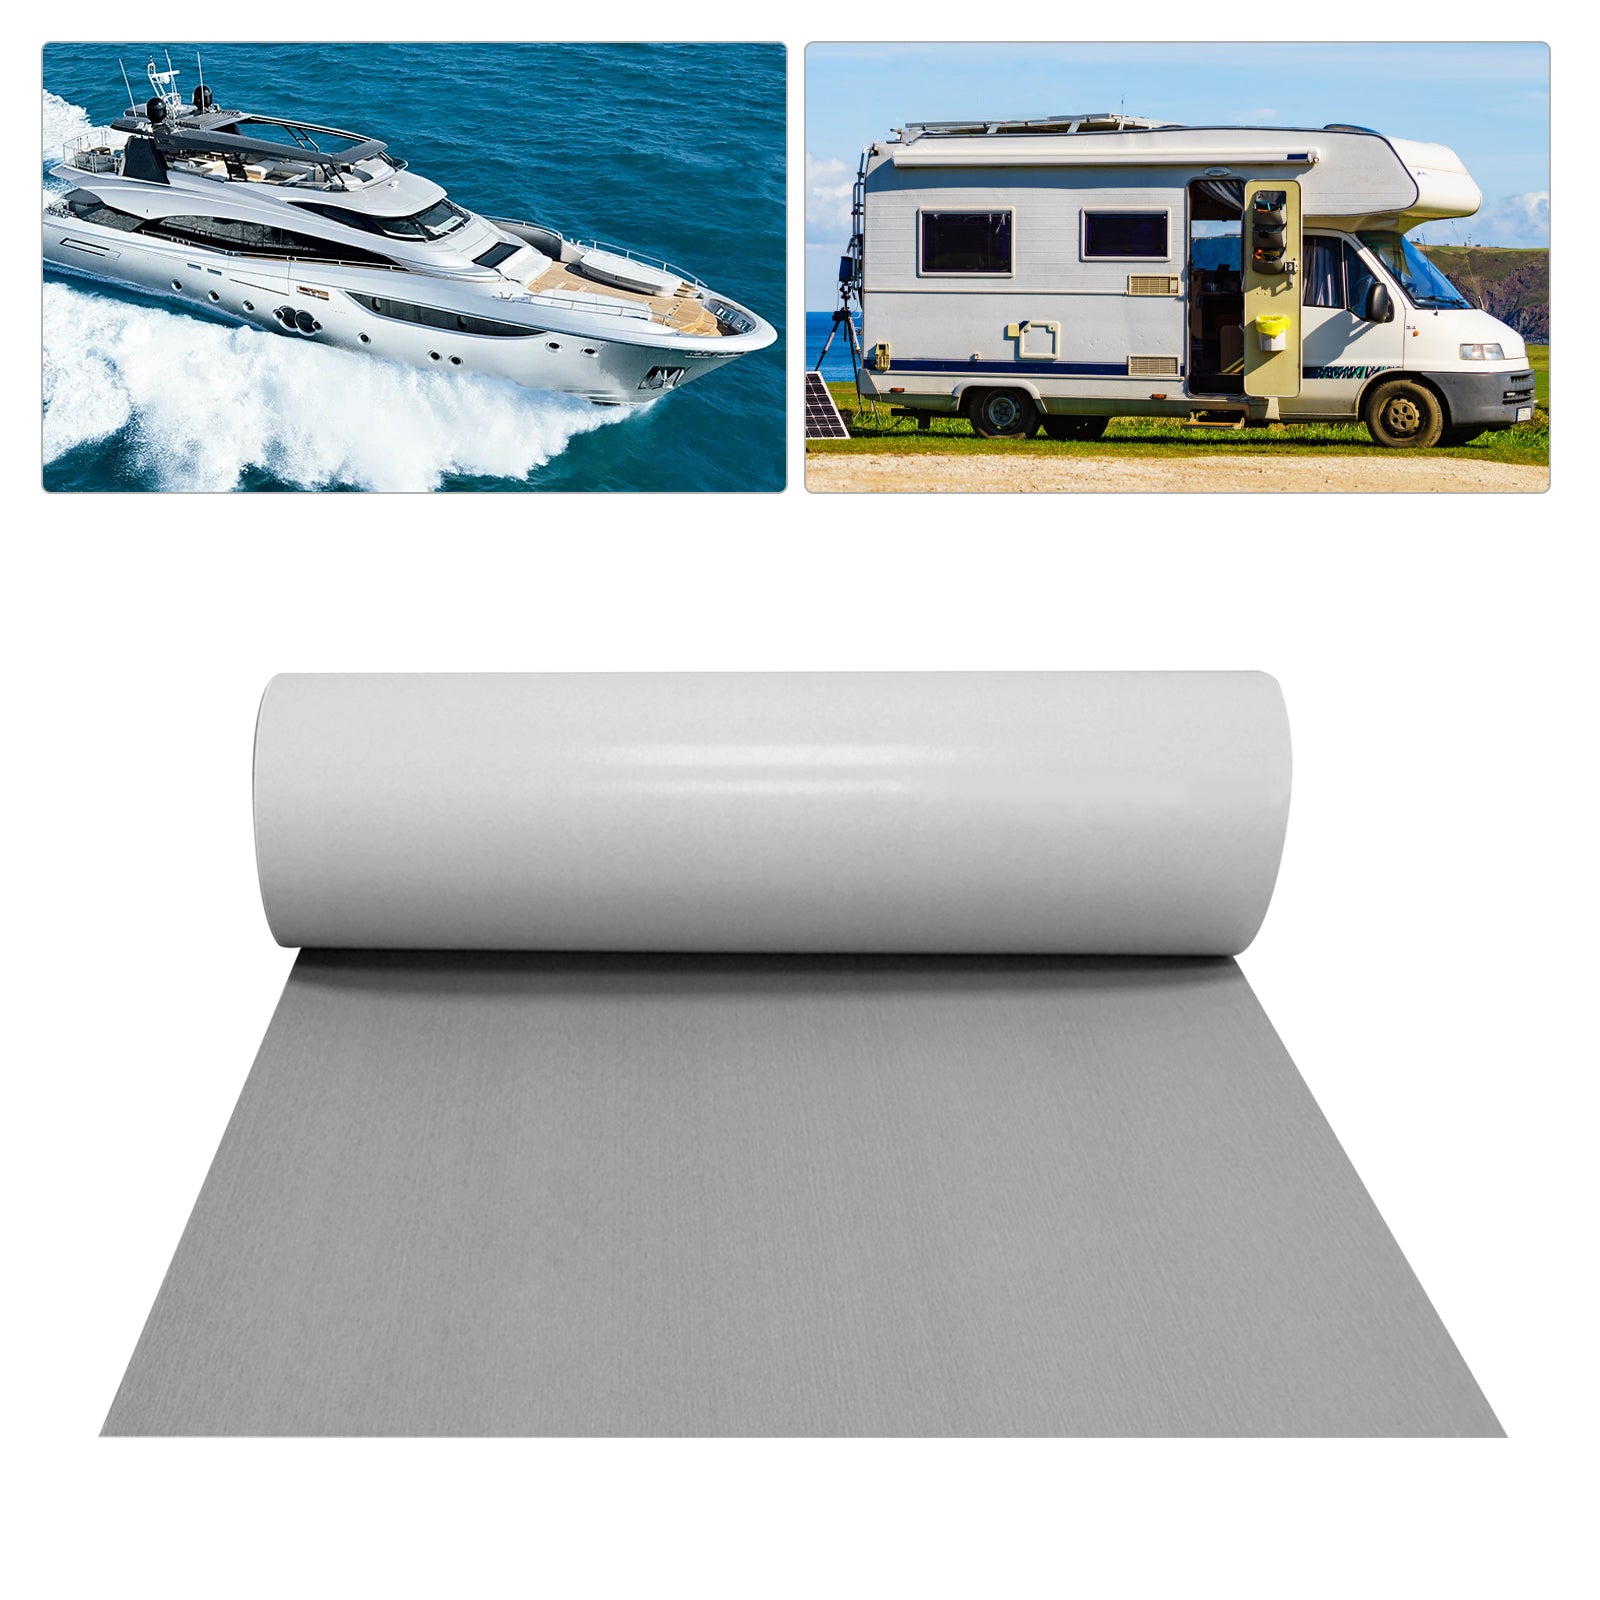 240 x 90 x 0.6cm tappeto antiscivolo in schiuma Eva per Barche e Kayak, RV, Decorazioni per Yacht (Grigio)